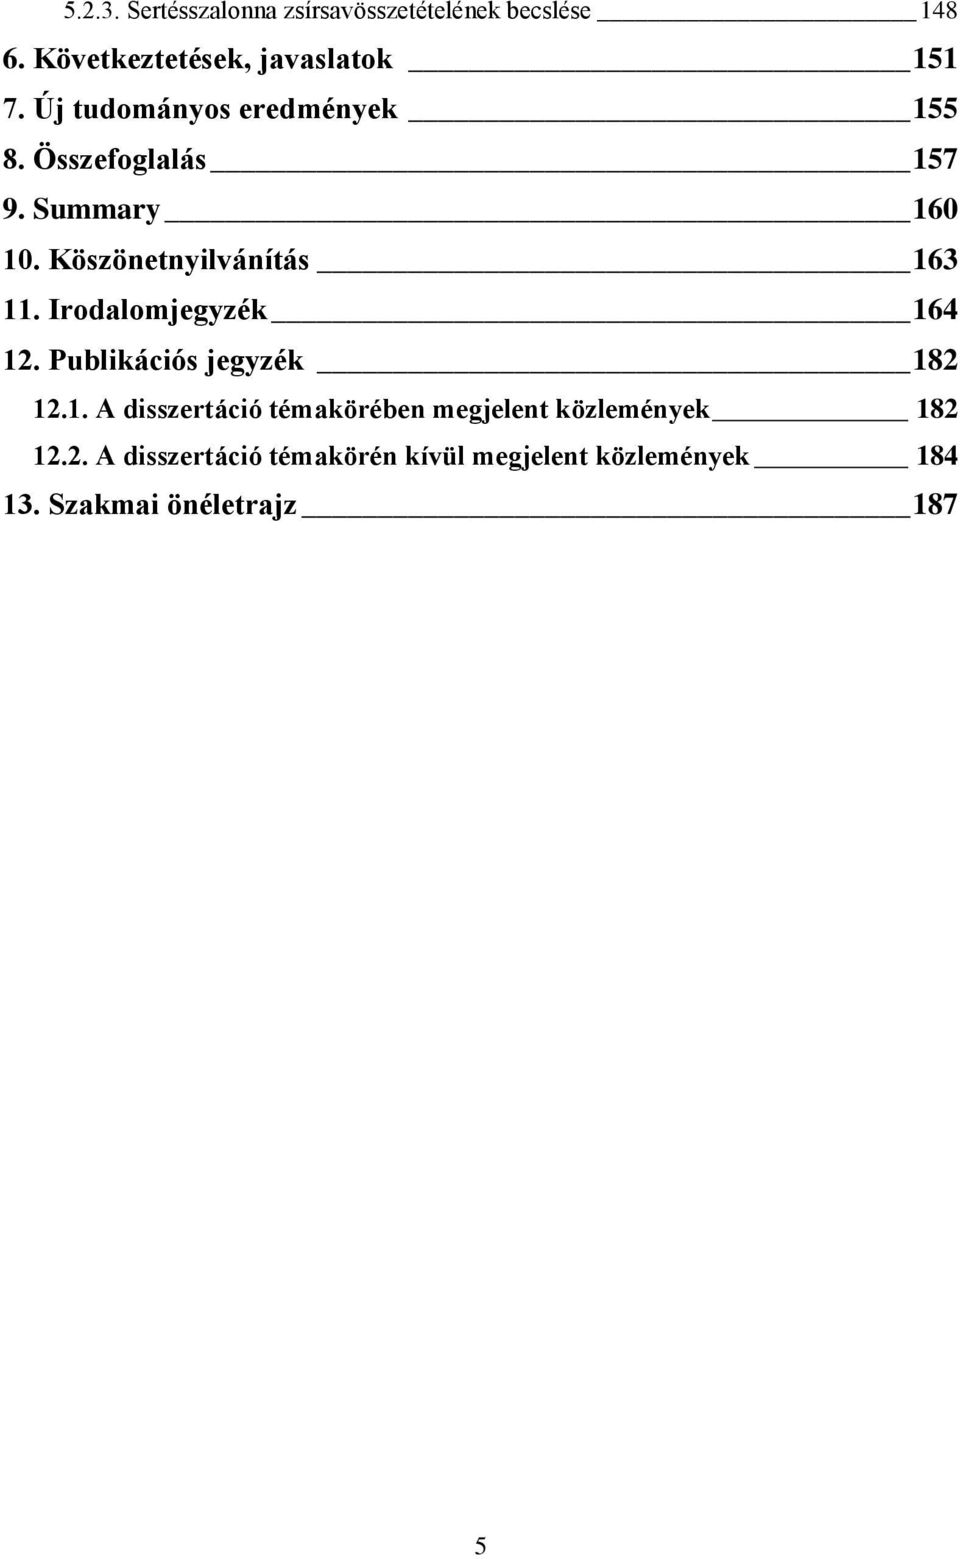 Irodalomjegyzék 164 12. Publikációs jegyzék 182 12.1. A disszertáció témakörében megjelent közlemények 182 12.